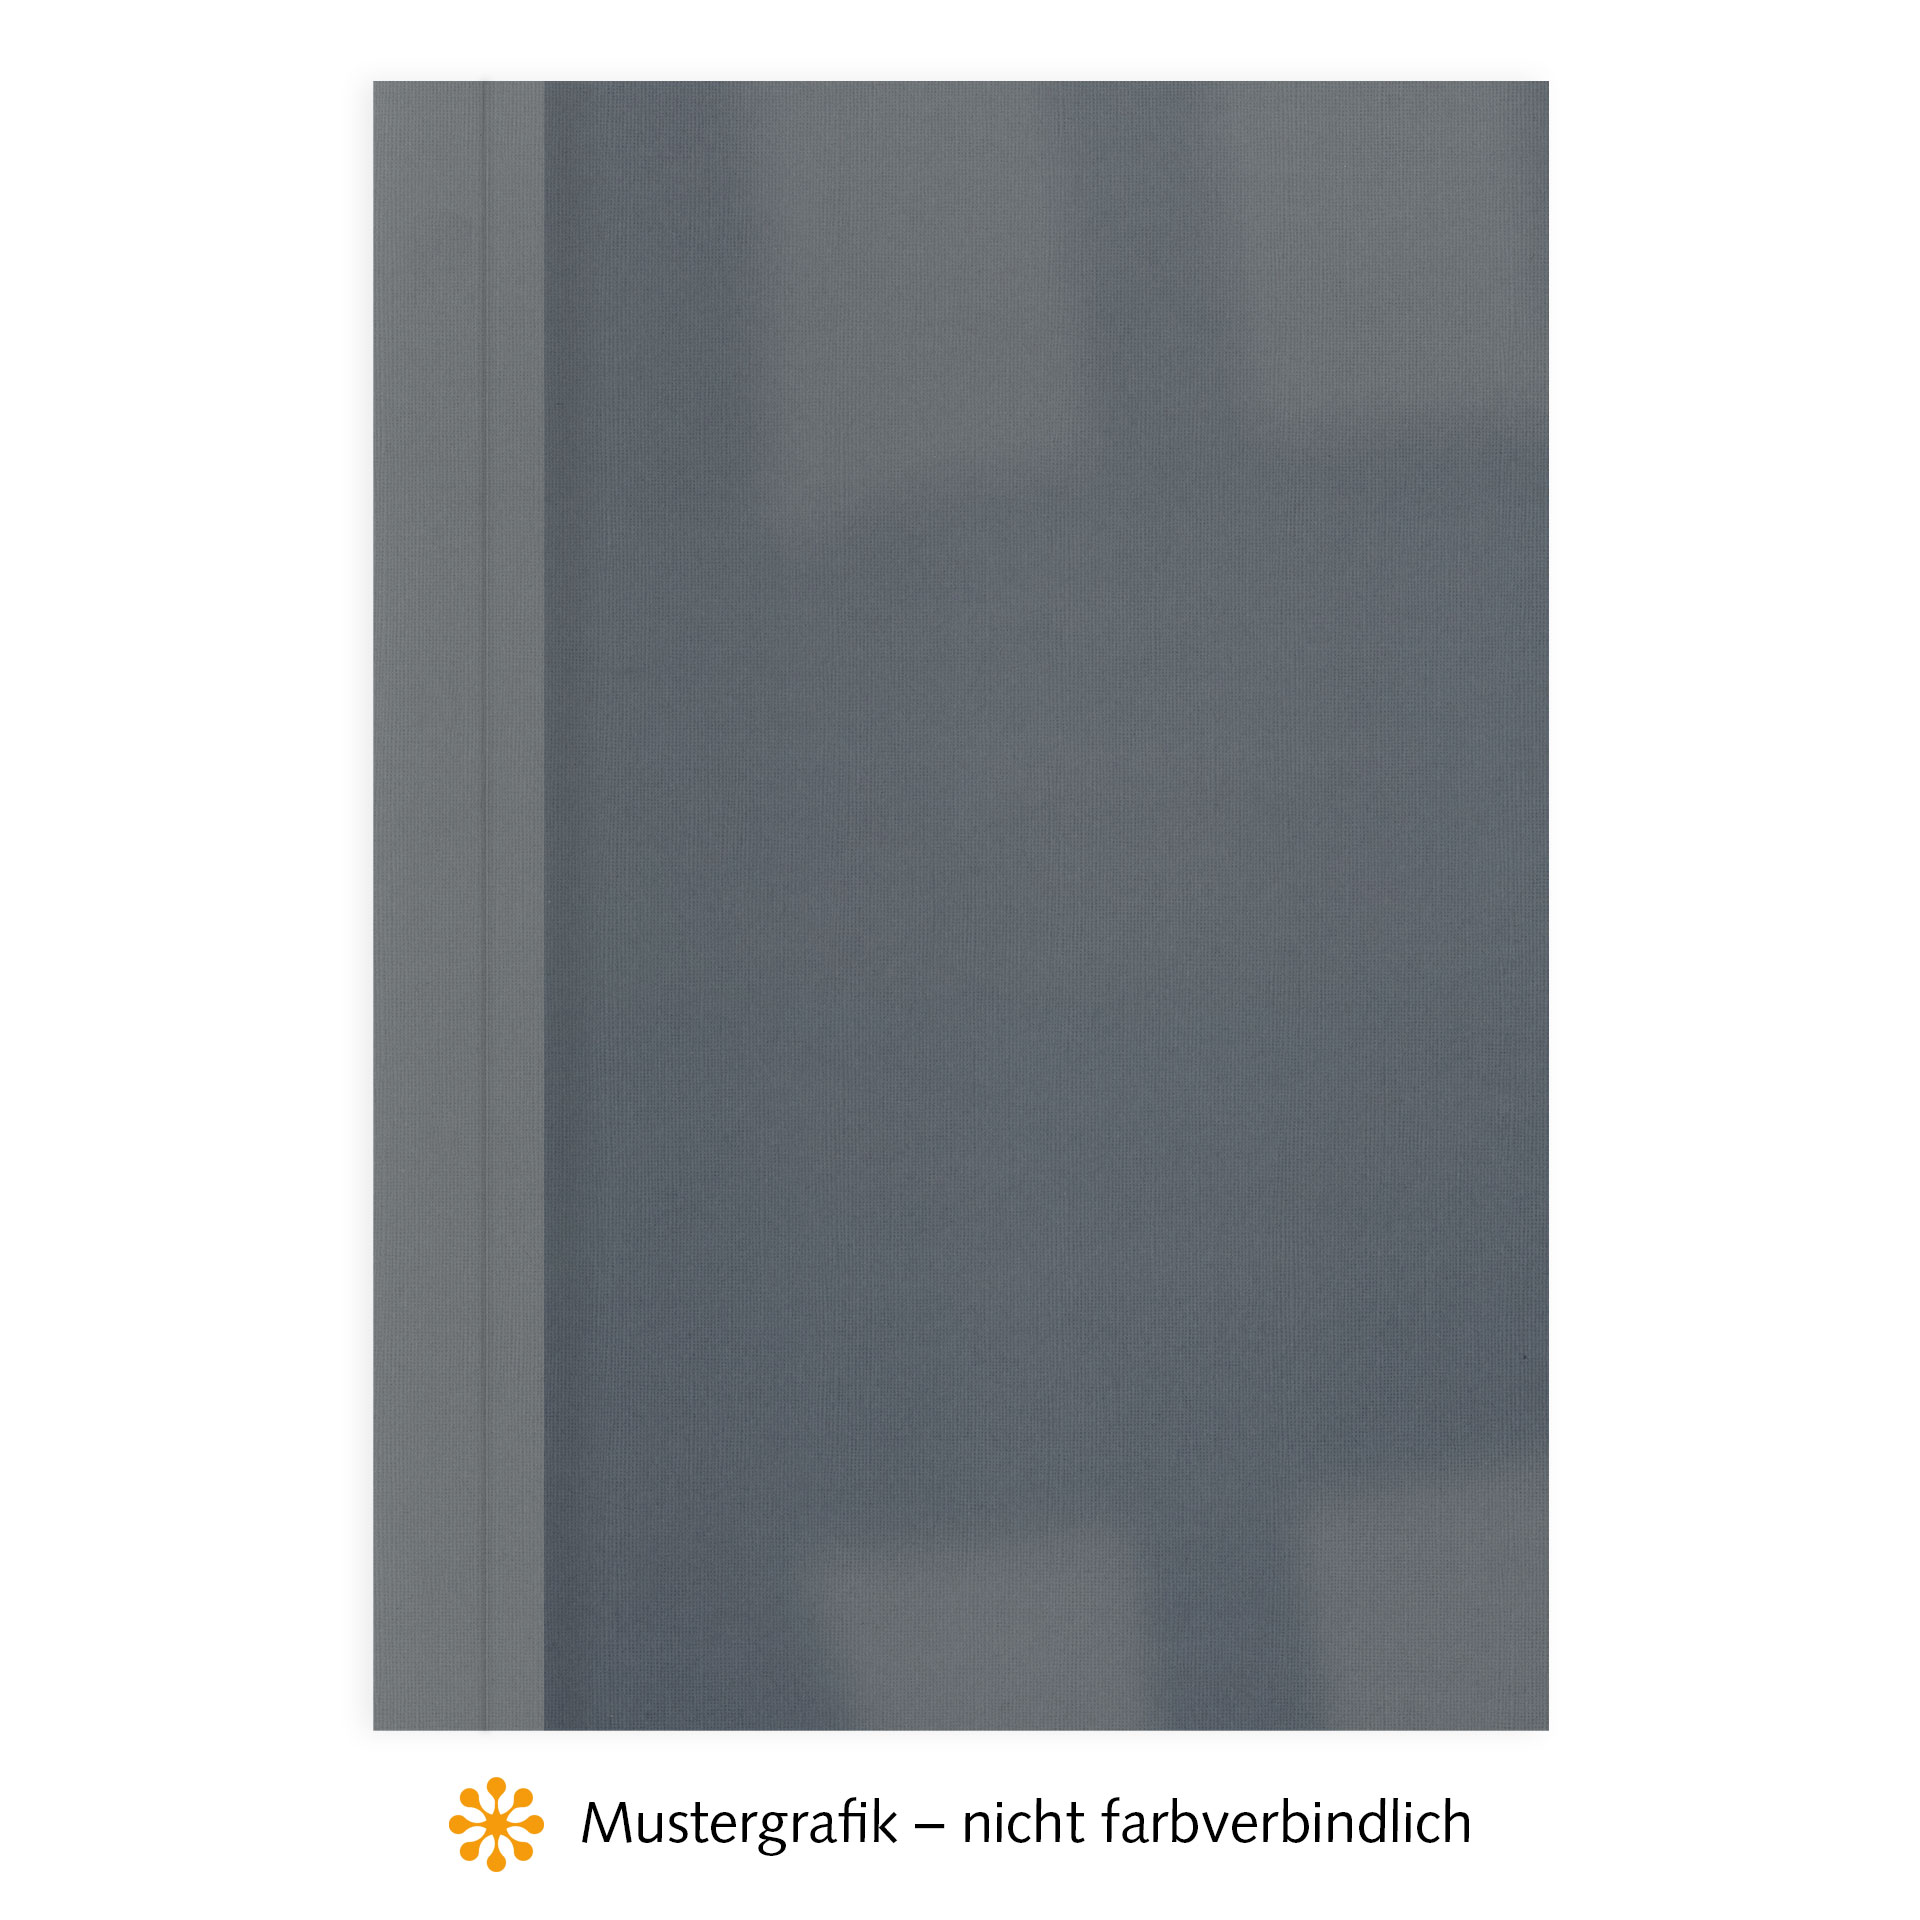 Ösenmappen DUO Cover, Vorderseite Folie KLAR transparent, Rückseite Karton Leinen, Dunkelgrau / Anthrazit, 9 mm, 81 bis 90 Blatt